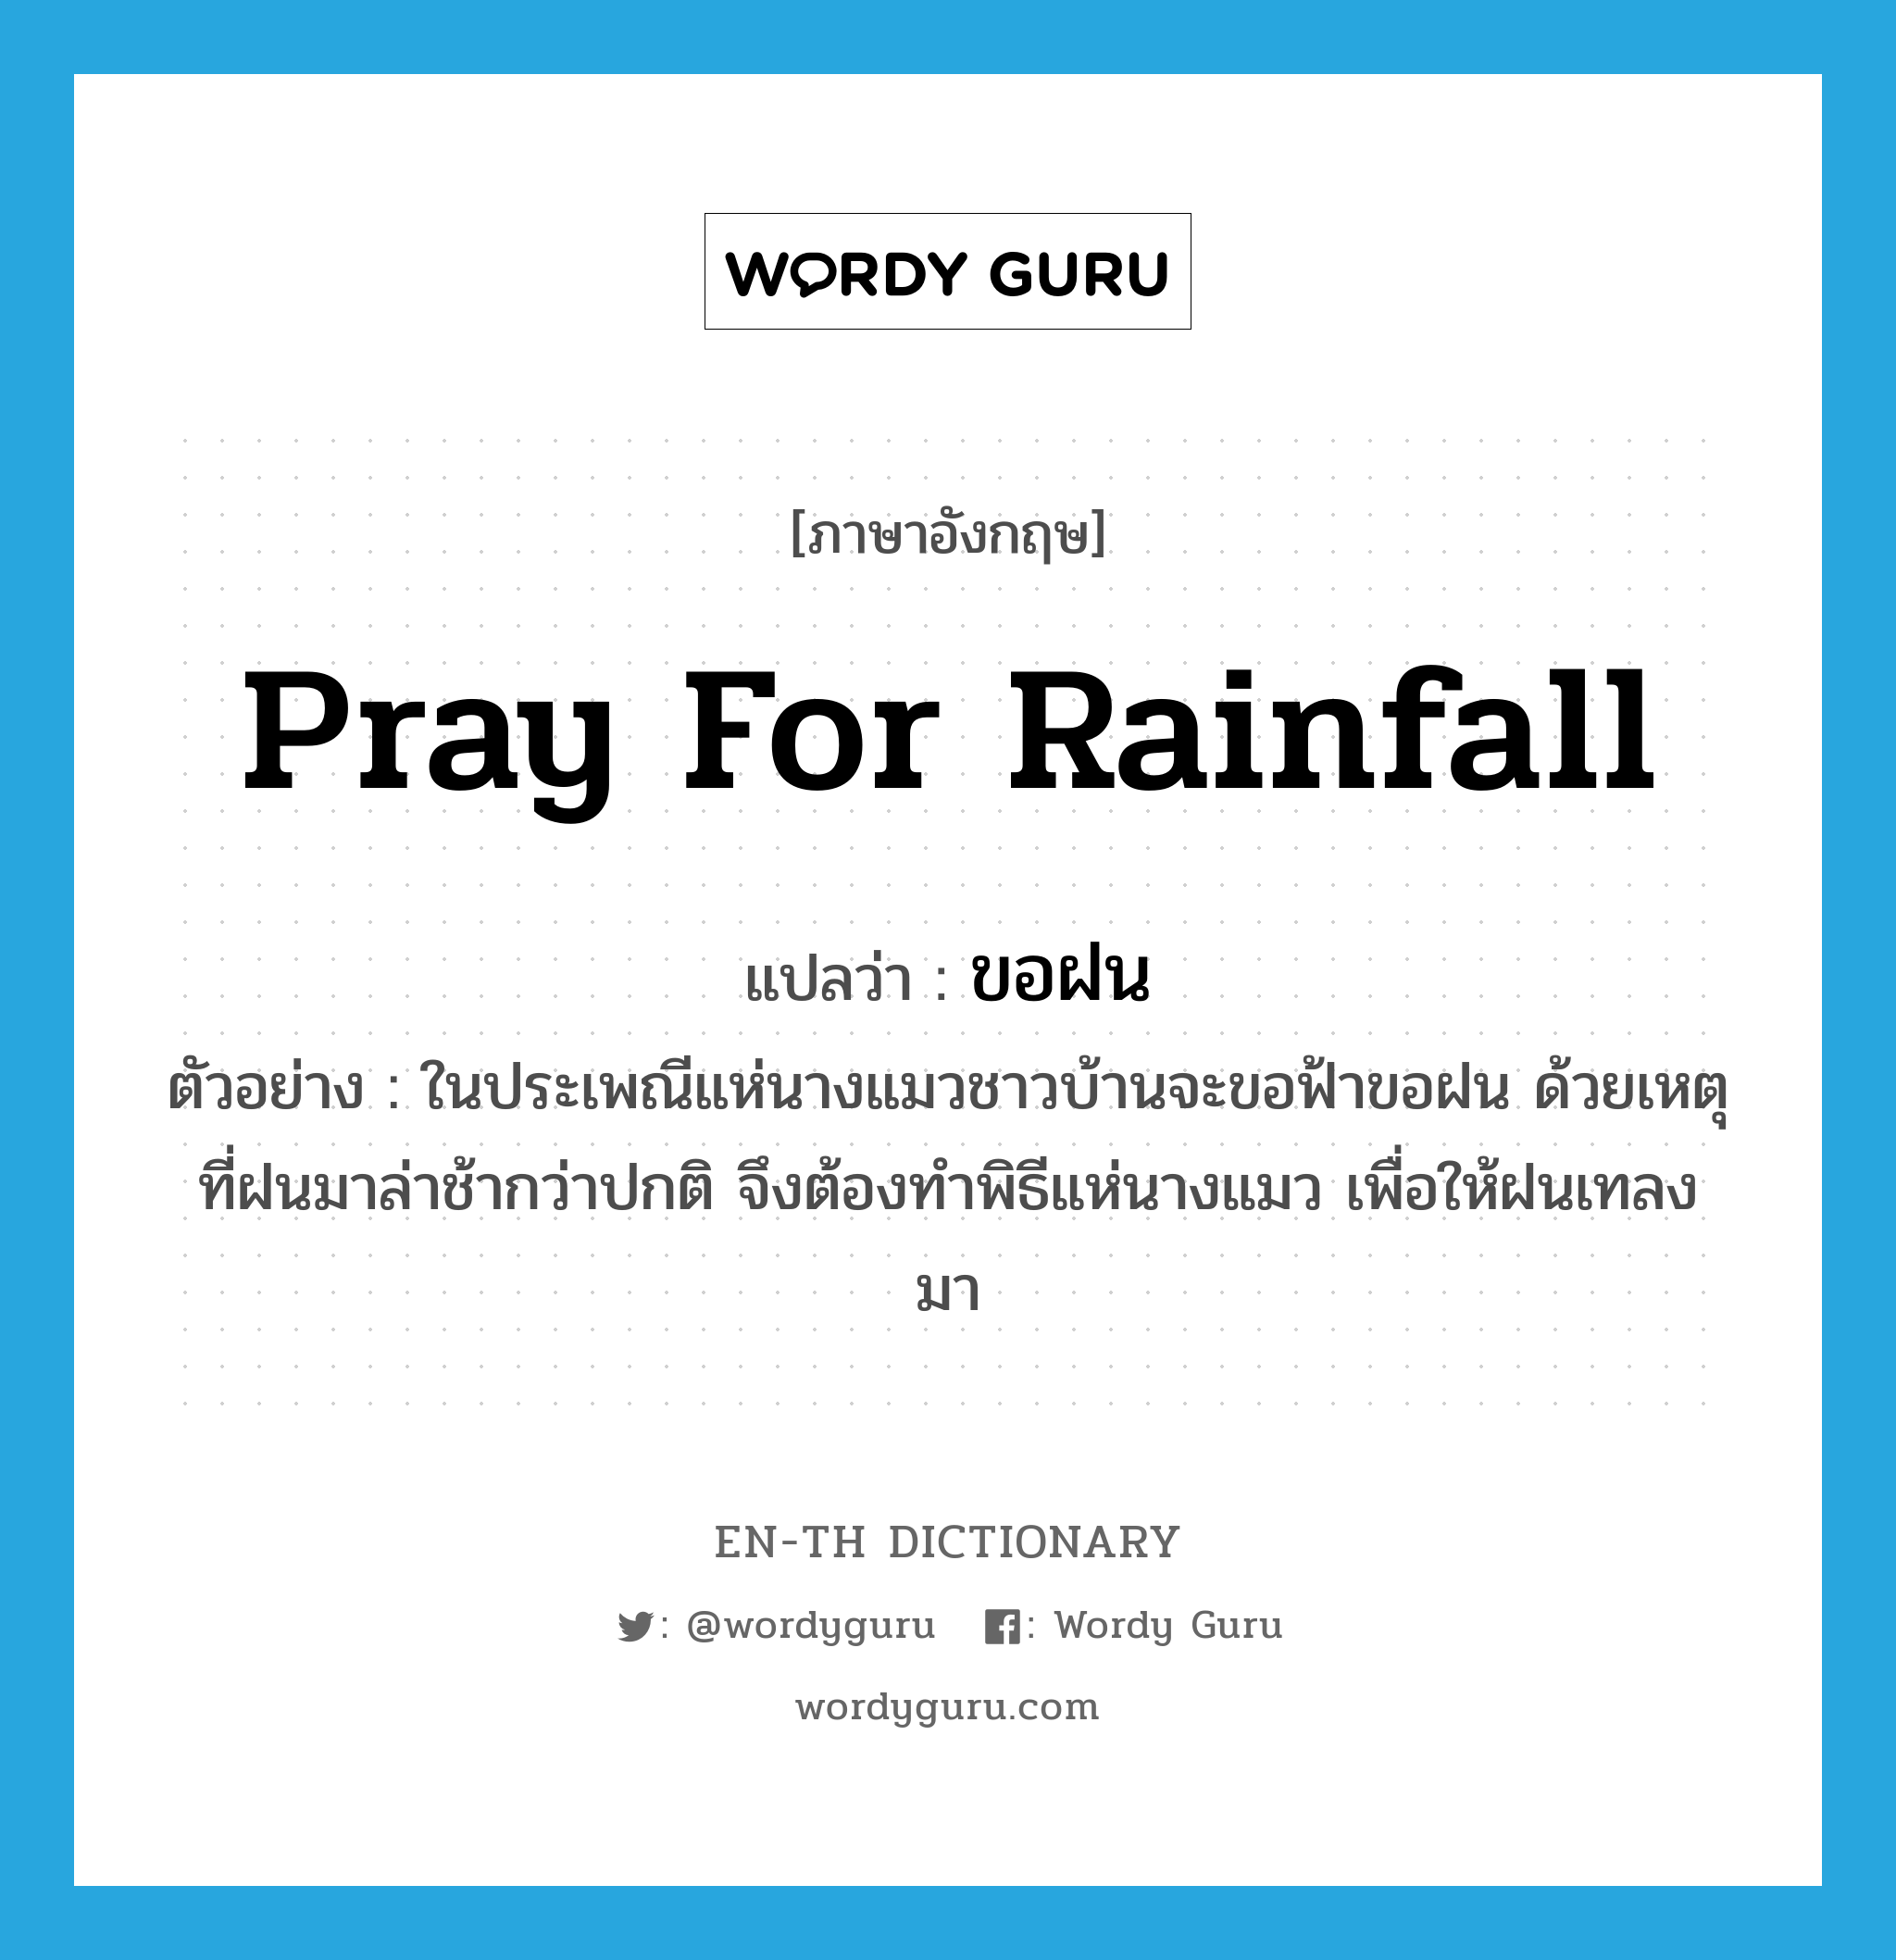 pray for rainfall แปลว่า?, คำศัพท์ภาษาอังกฤษ pray for rainfall แปลว่า ขอฝน ประเภท V ตัวอย่าง ในประเพณีแห่นางแมวชาวบ้านจะขอฟ้าขอฝน ด้วยเหตุที่ฝนมาล่าช้ากว่าปกติ จึงต้องทำพิธีแห่นางแมว เพื่อให้ฝนเทลงมา หมวด V